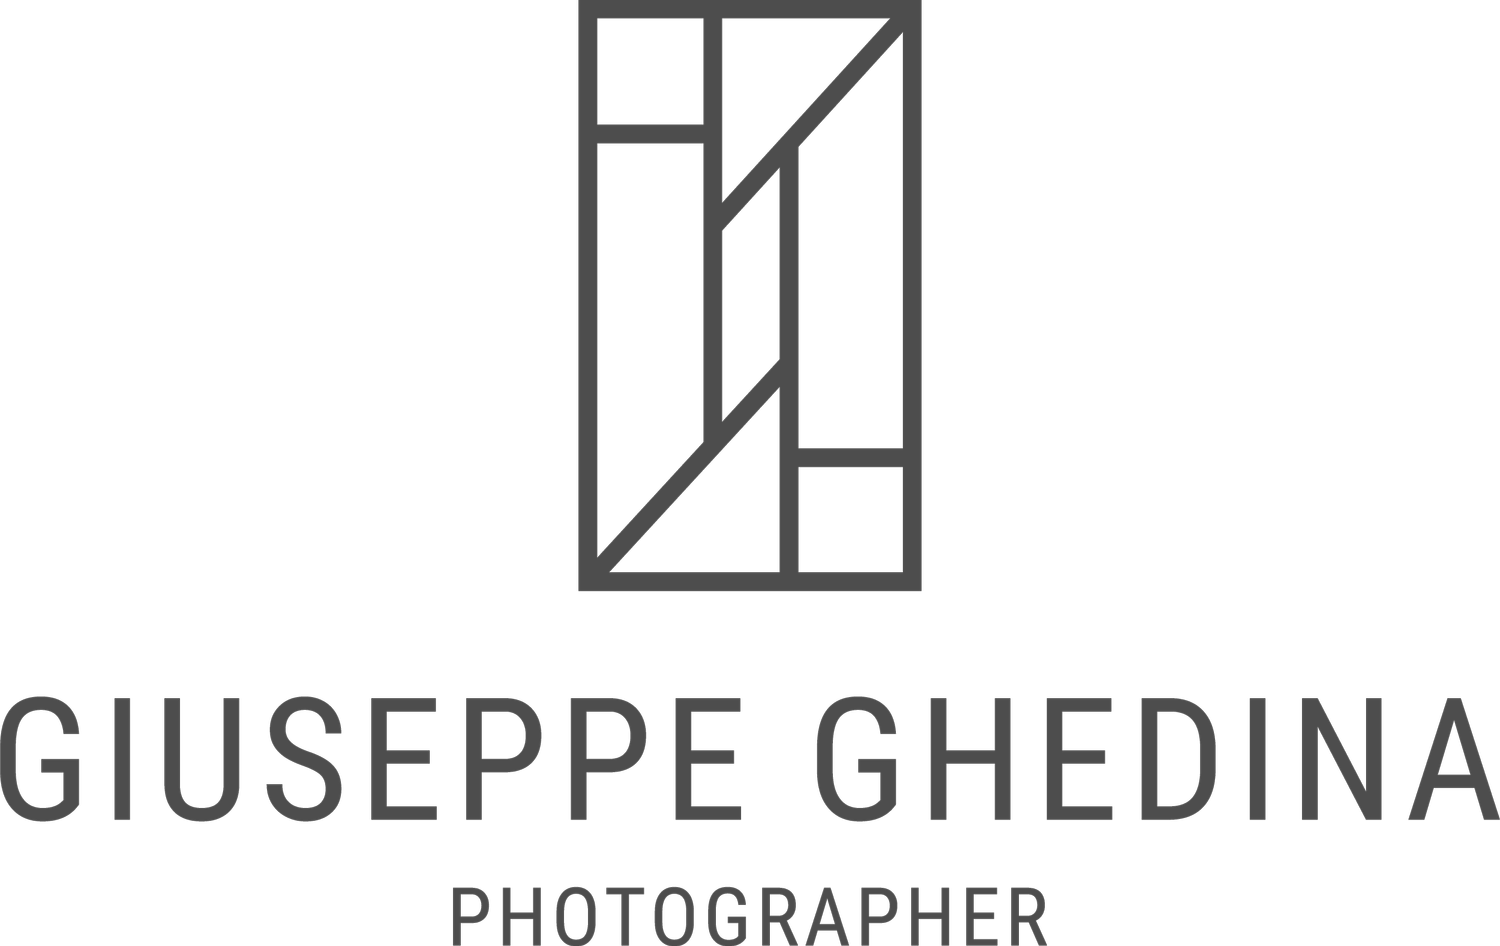 GIUSEPPE GHEDINA FOTOGRAFO